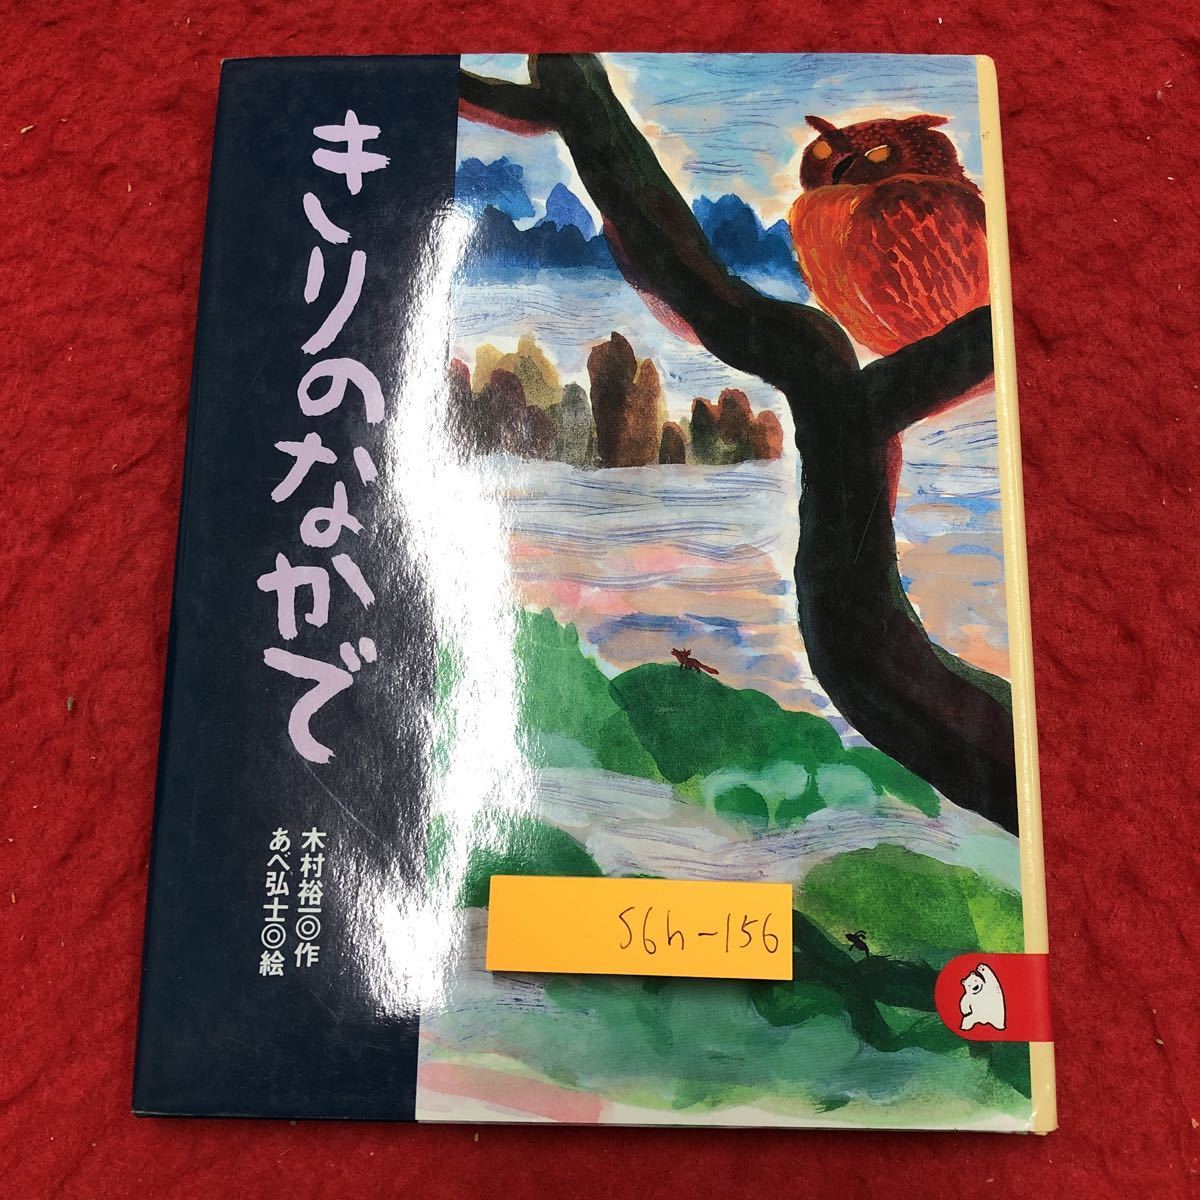 S6h-156 कोहरे में लेखक: युइची किमुरा चित्रण: हिरोशी अबे 31 अगस्त, 2001 8वां संस्करण कोडान्शा चित्र पुस्तक बच्चों का साहित्य एक तूफानी रात परी कथा पशु भेड़िया भेड़ दोस्ती, बच्चों की किताबें, चित्र पुस्तकों, चित्र पुस्तकों, सामान्यतः चित्र पुस्तकें